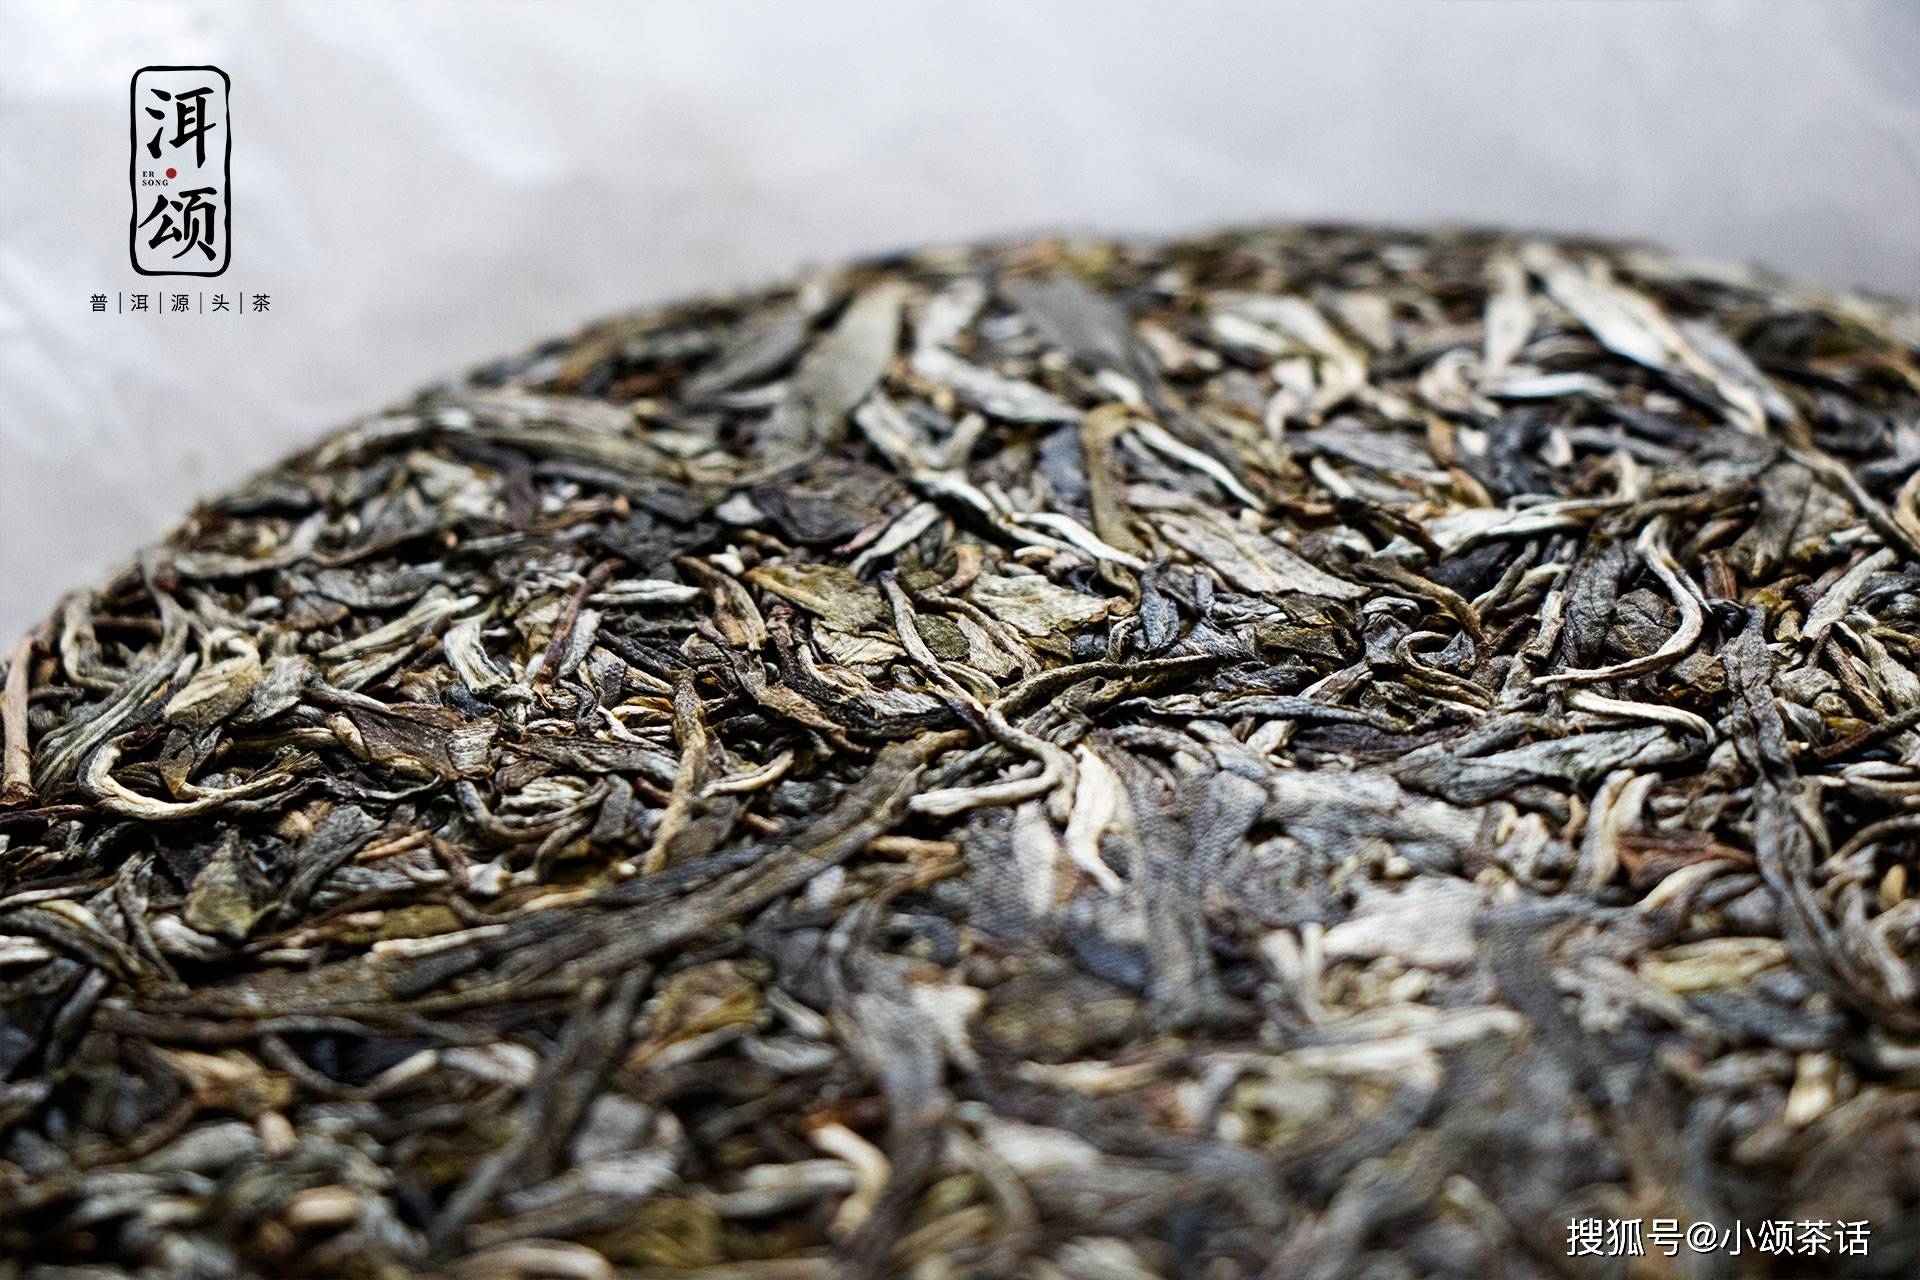 樟香普洱茶是什么意思？熟茶、生茶的区别与功效